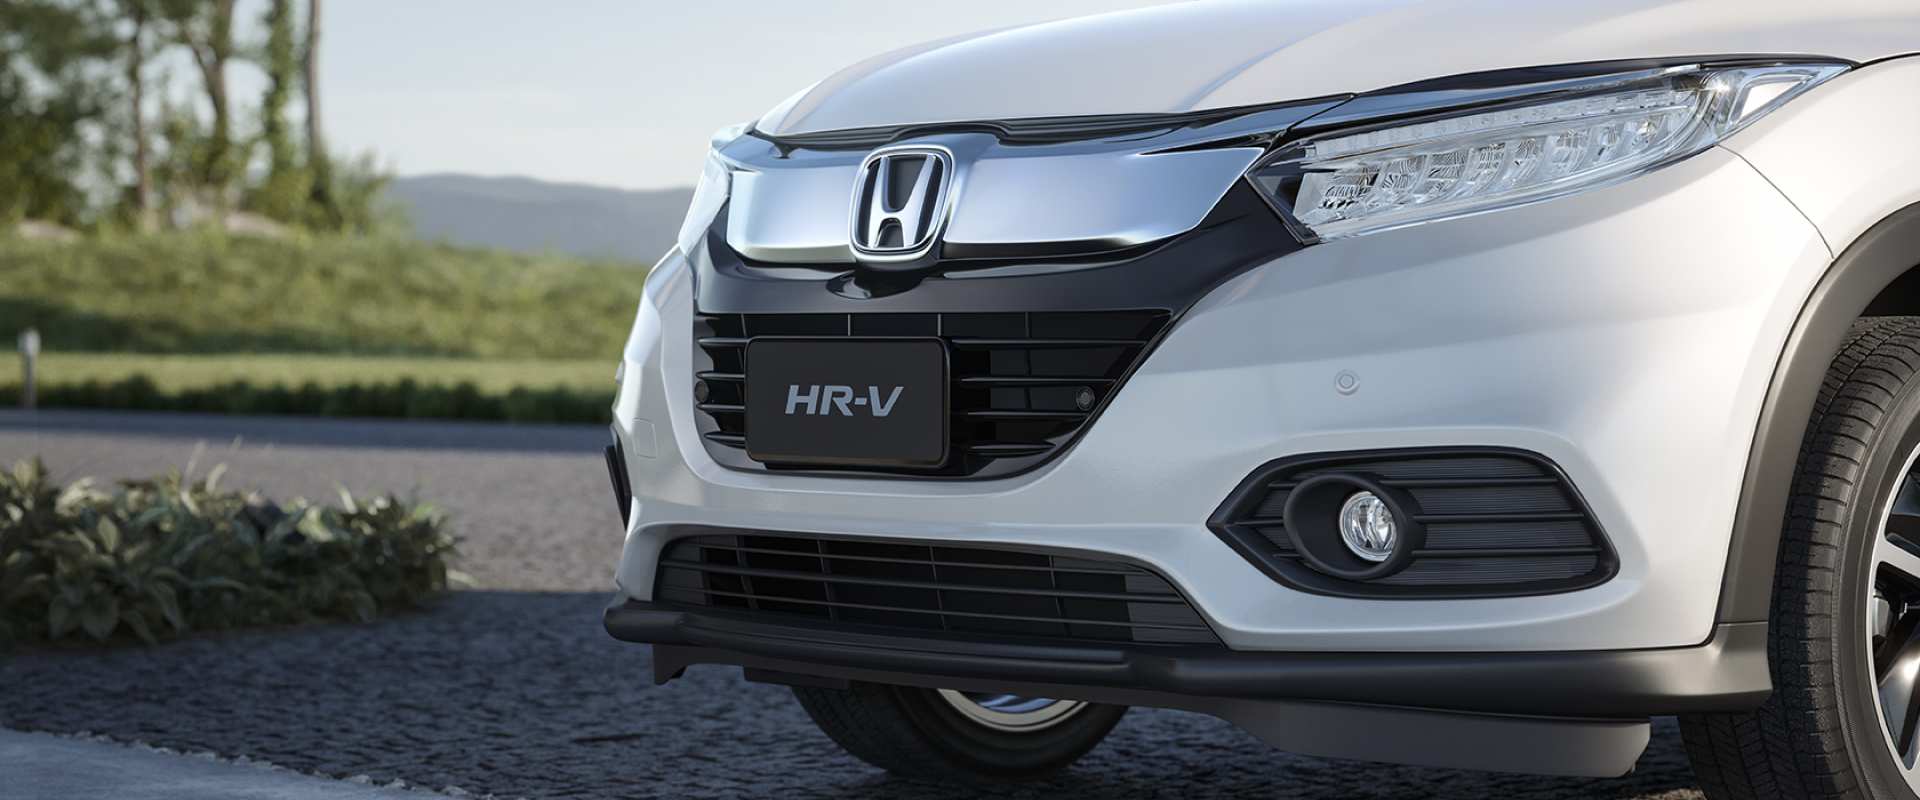 frente-honda-hr-v Honda HR-V - Preço, Ficha Técnica, Fotos